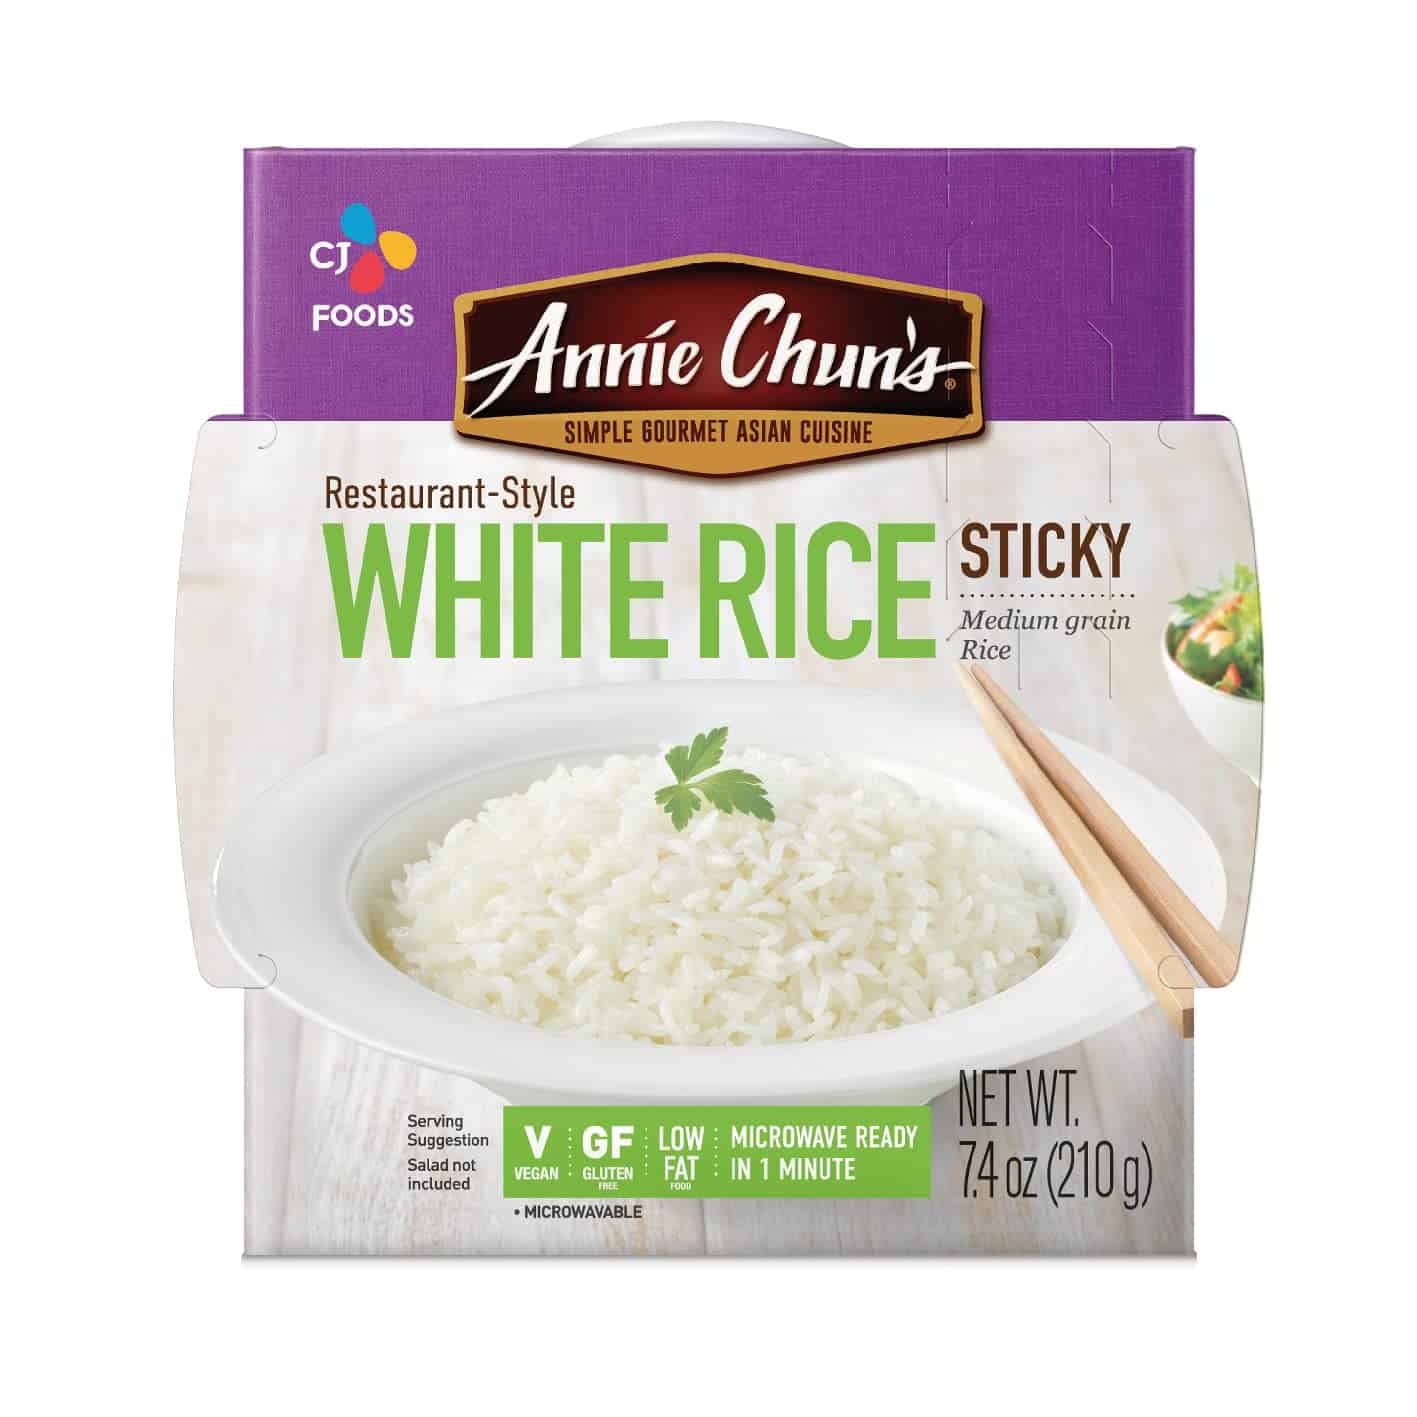 ข้าวหุงสุกที่ดีที่สุด: ข้าวเหนียวขาวปรุงสุกของ Annie Chun